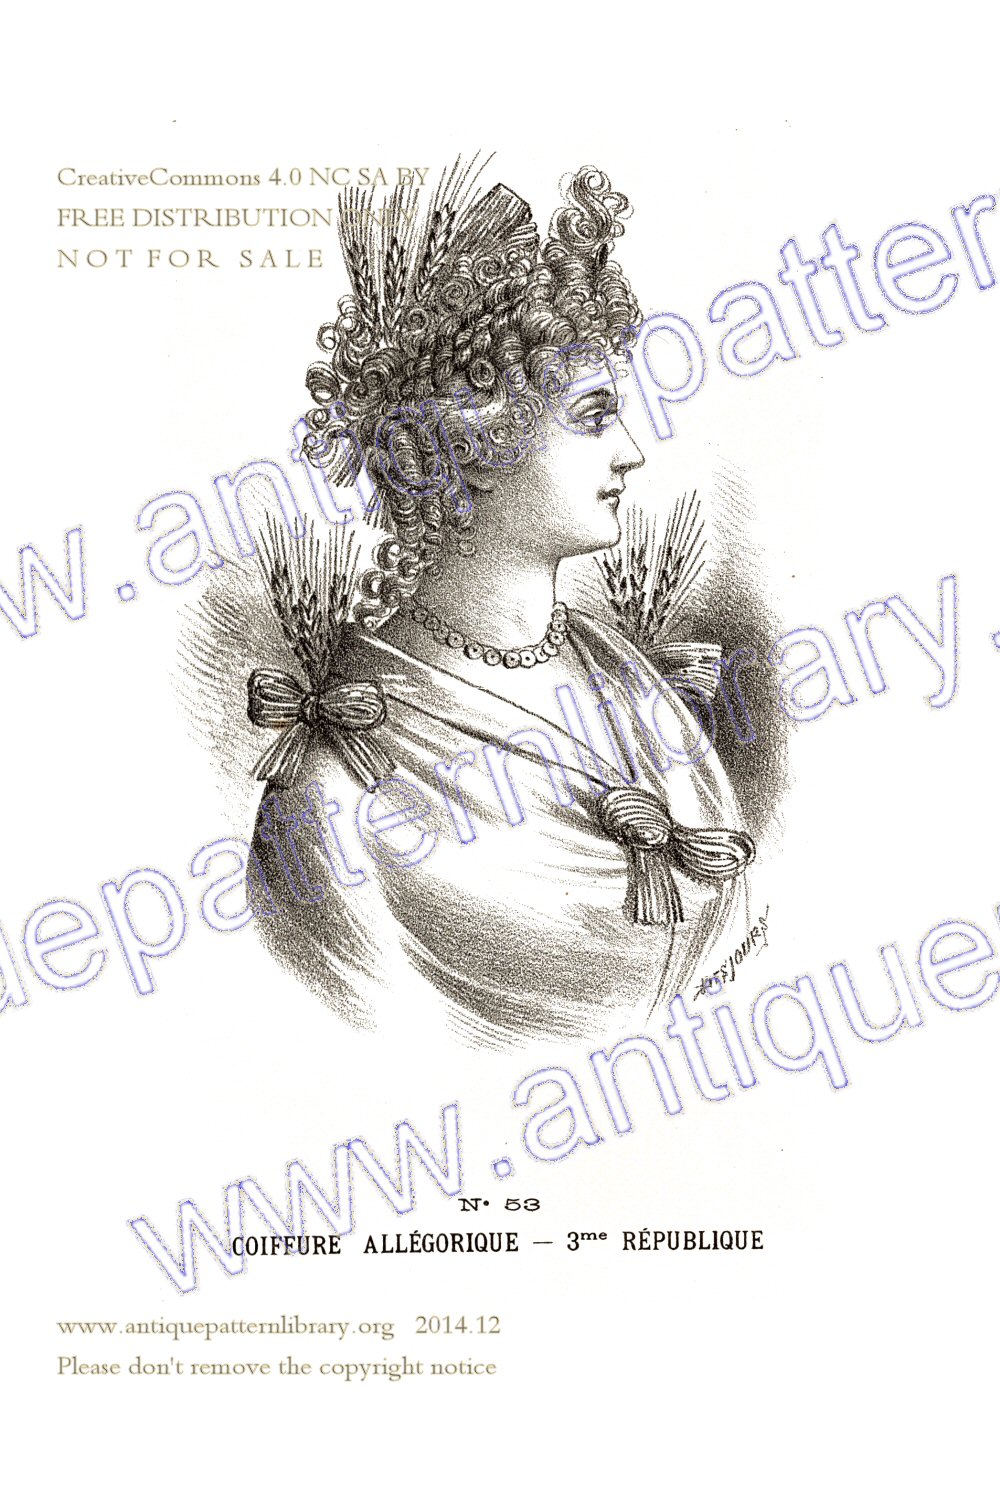 E-YS008 Catalogue Illustre des Coiffures